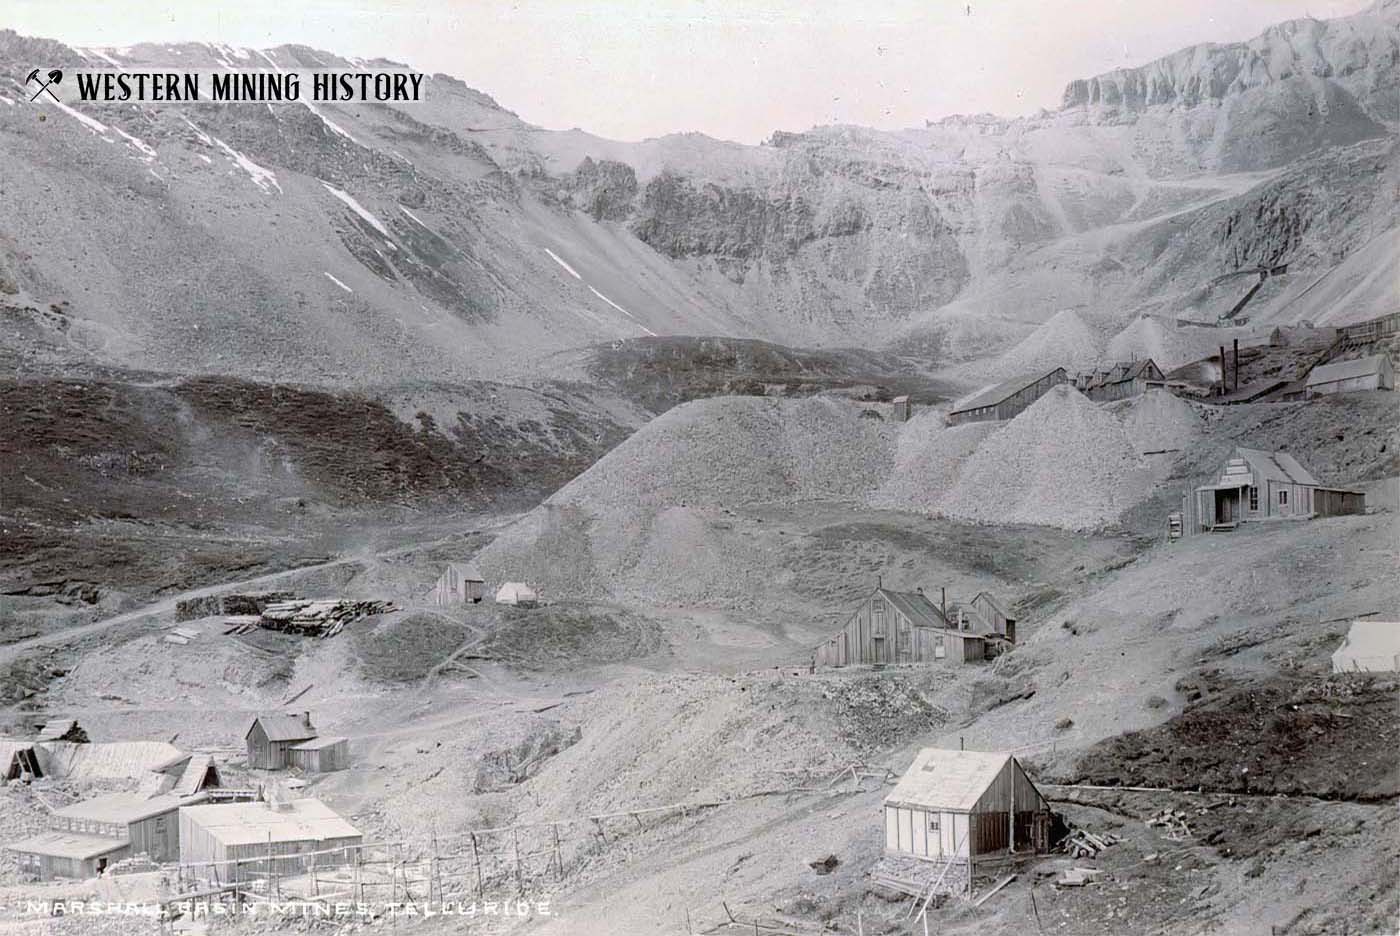 Sheridan No. 2 mine at Marshall Basin ca. 1880s